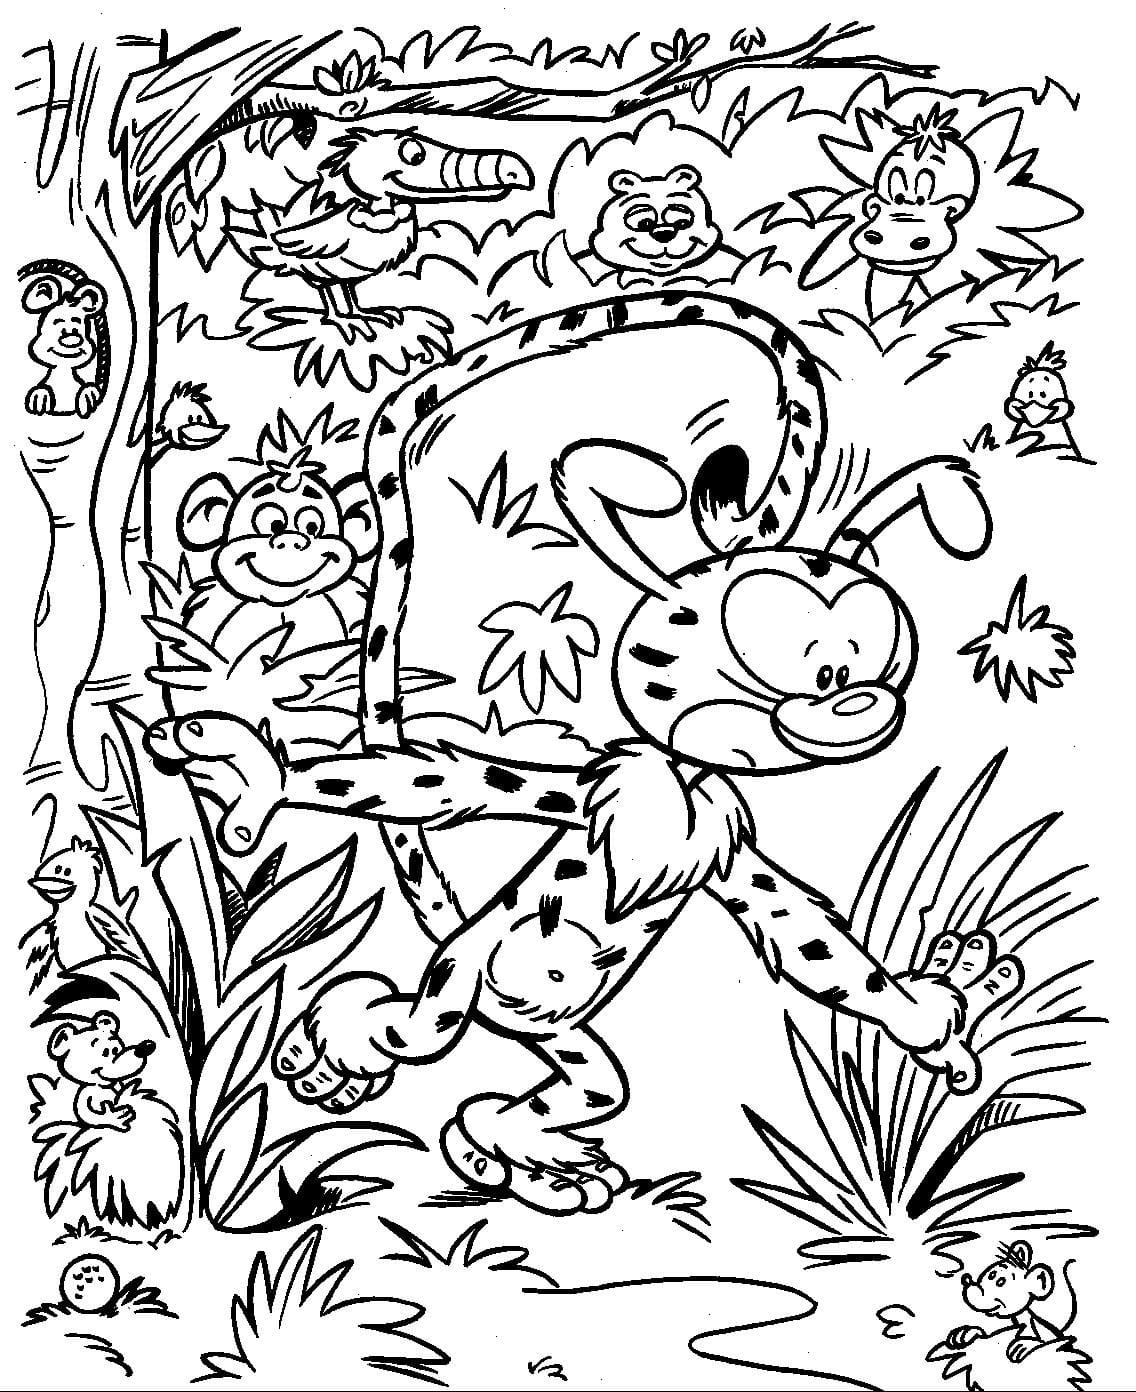 Marsupilami Dans la Forêt coloring page